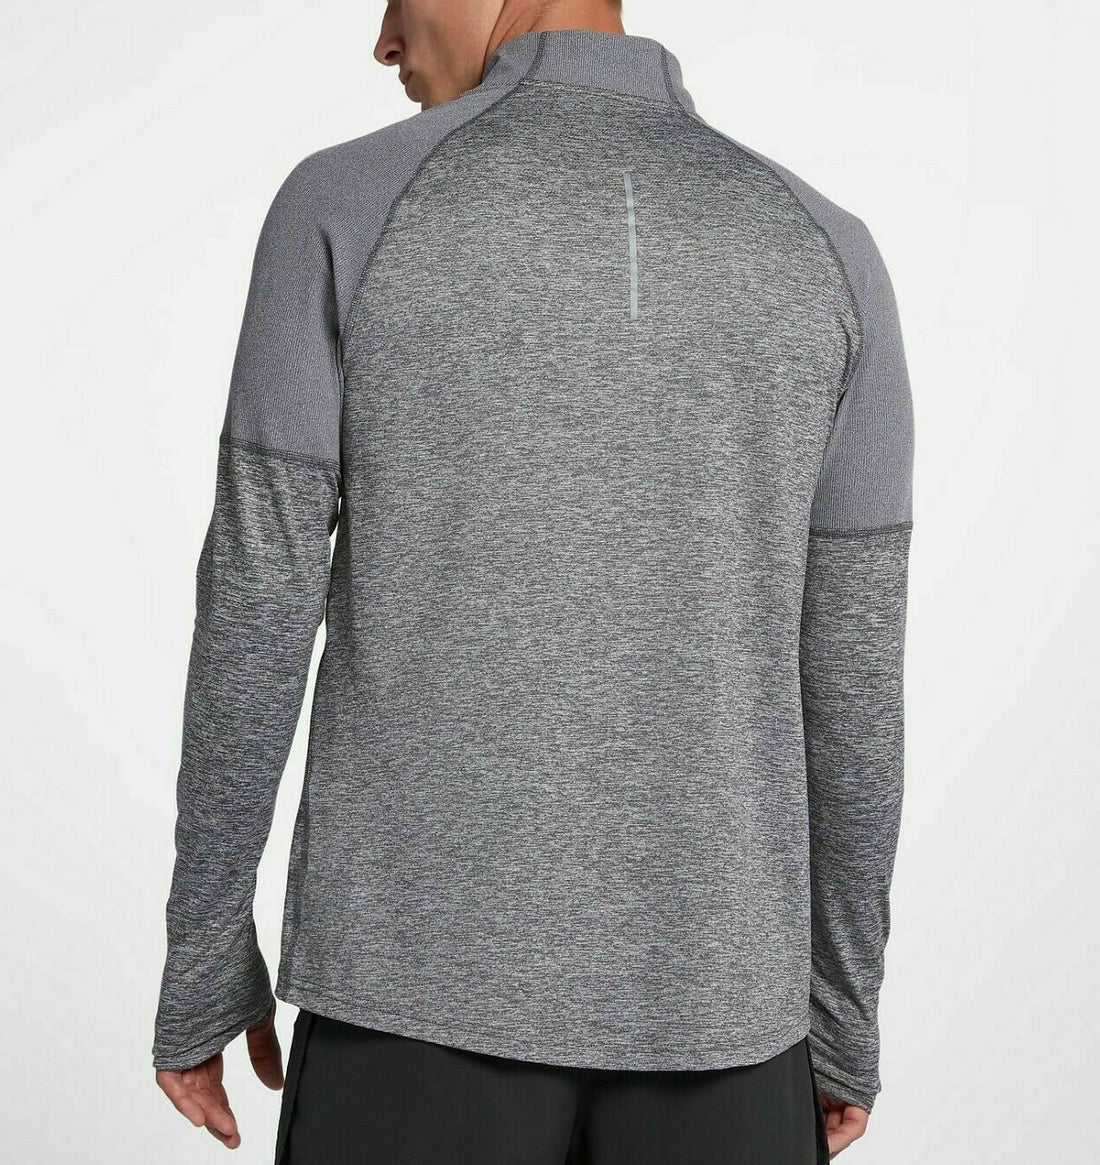 Nike Element 2.0 Half Zip Grey